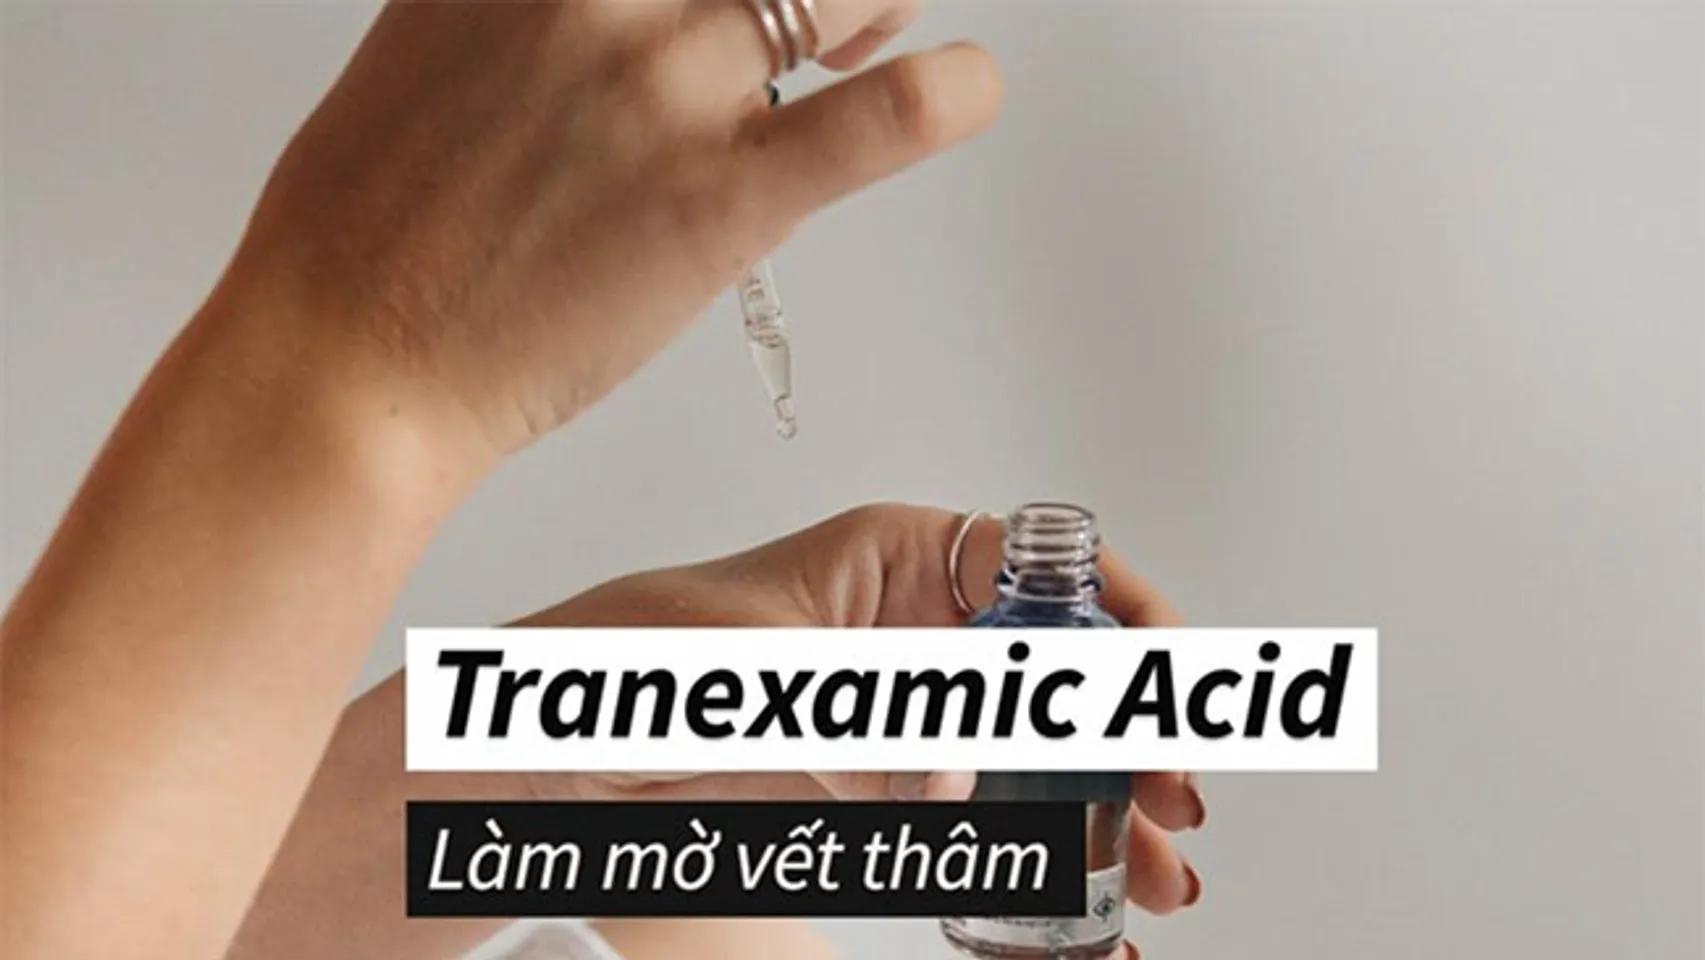 công dụng của tranexamic acid: làm mờ vết thâm